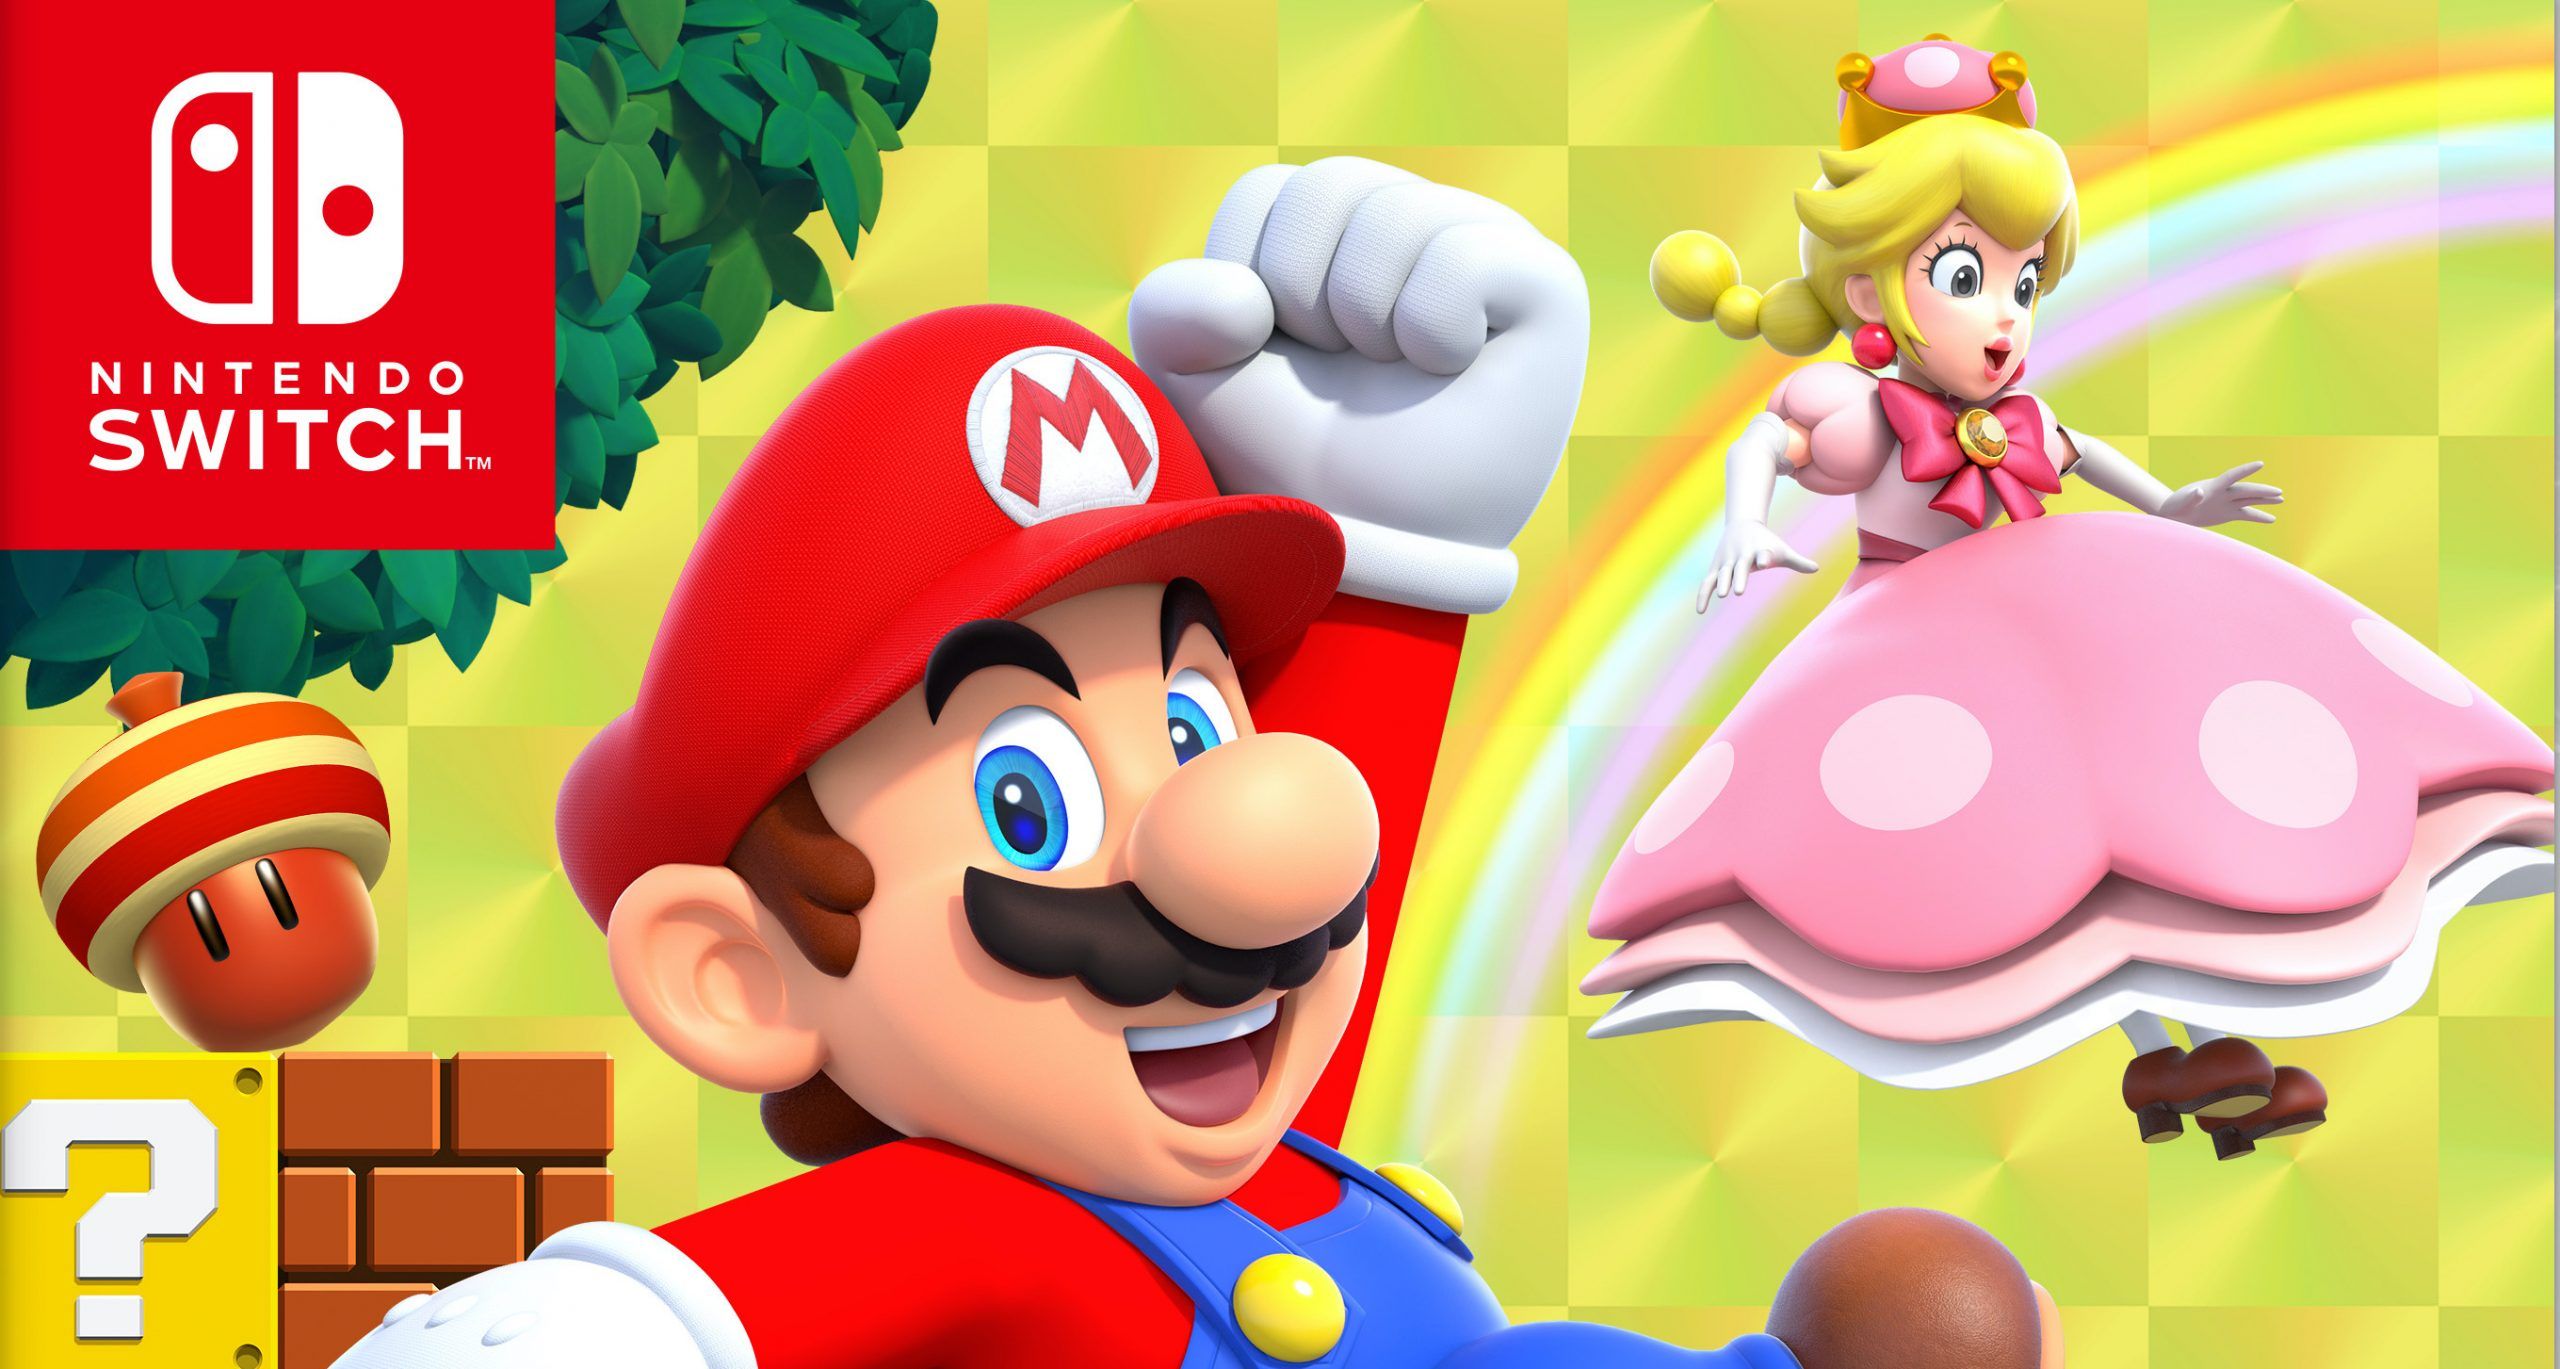 Mario bros nintendo switch. Super Mario Bros Nintendo Switch. New super Mario Bros u Deluxe Nintendo Switch. New super Mario Bros. U Deluxe. New super Mario Bros u Deluxe Nintendo Switch купить.